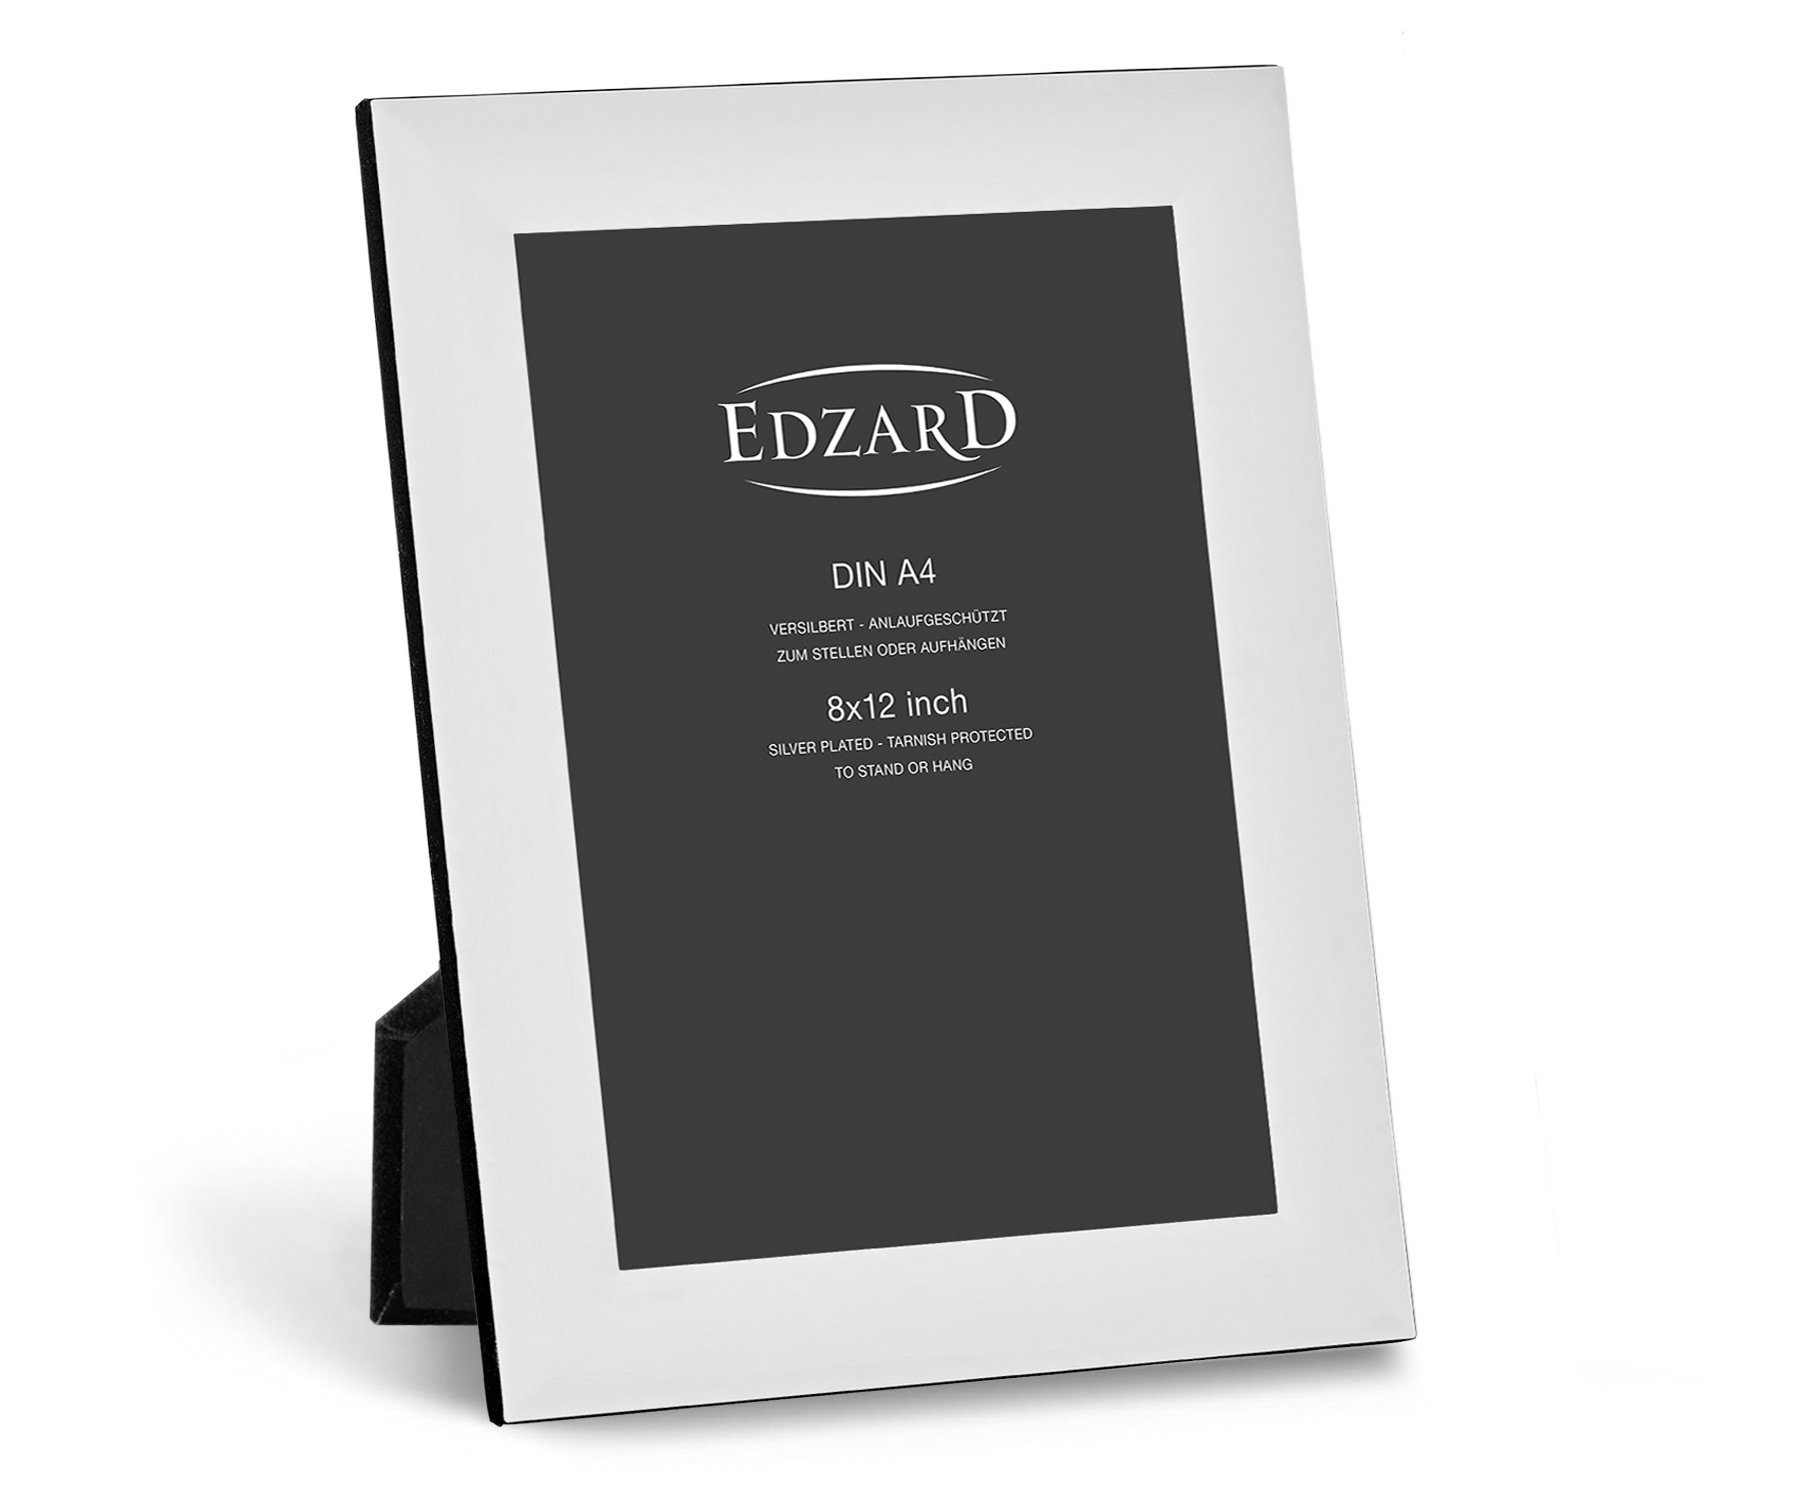 EDZARD Bilderrahmen Gela, Fotorahmen, versilbert und anlaufgeschützt, 20x30 cm Bild, 2 Aufhänger